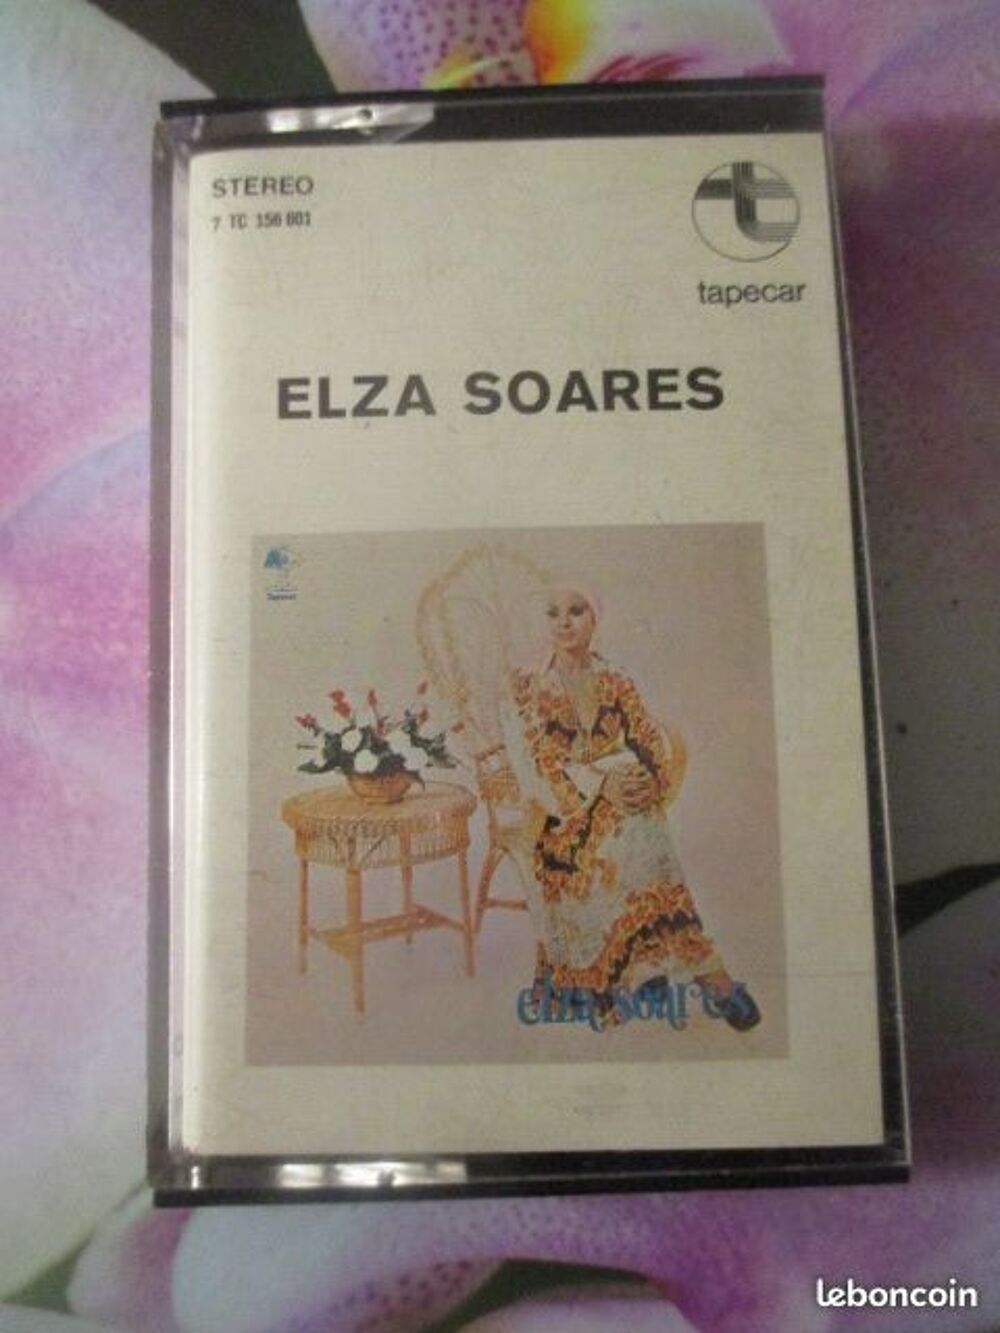 Cassette audio Elza Soares
CD et vinyles